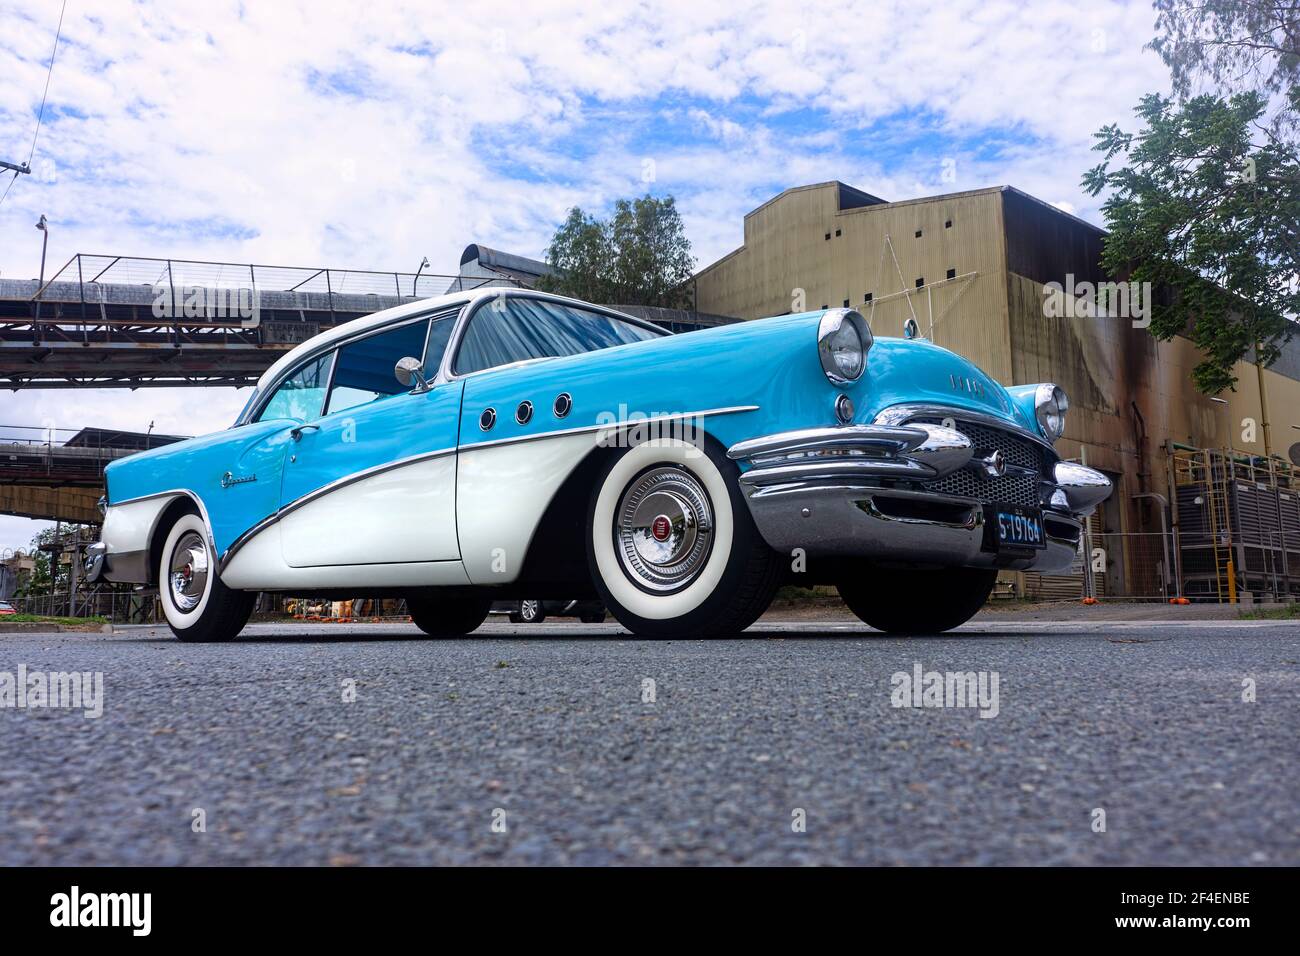 Vue basse d'une berline Buick américaine classique restaurée de 1955 en bleu et blanc sur fond industriel avec espace de copie. Banque D'Images